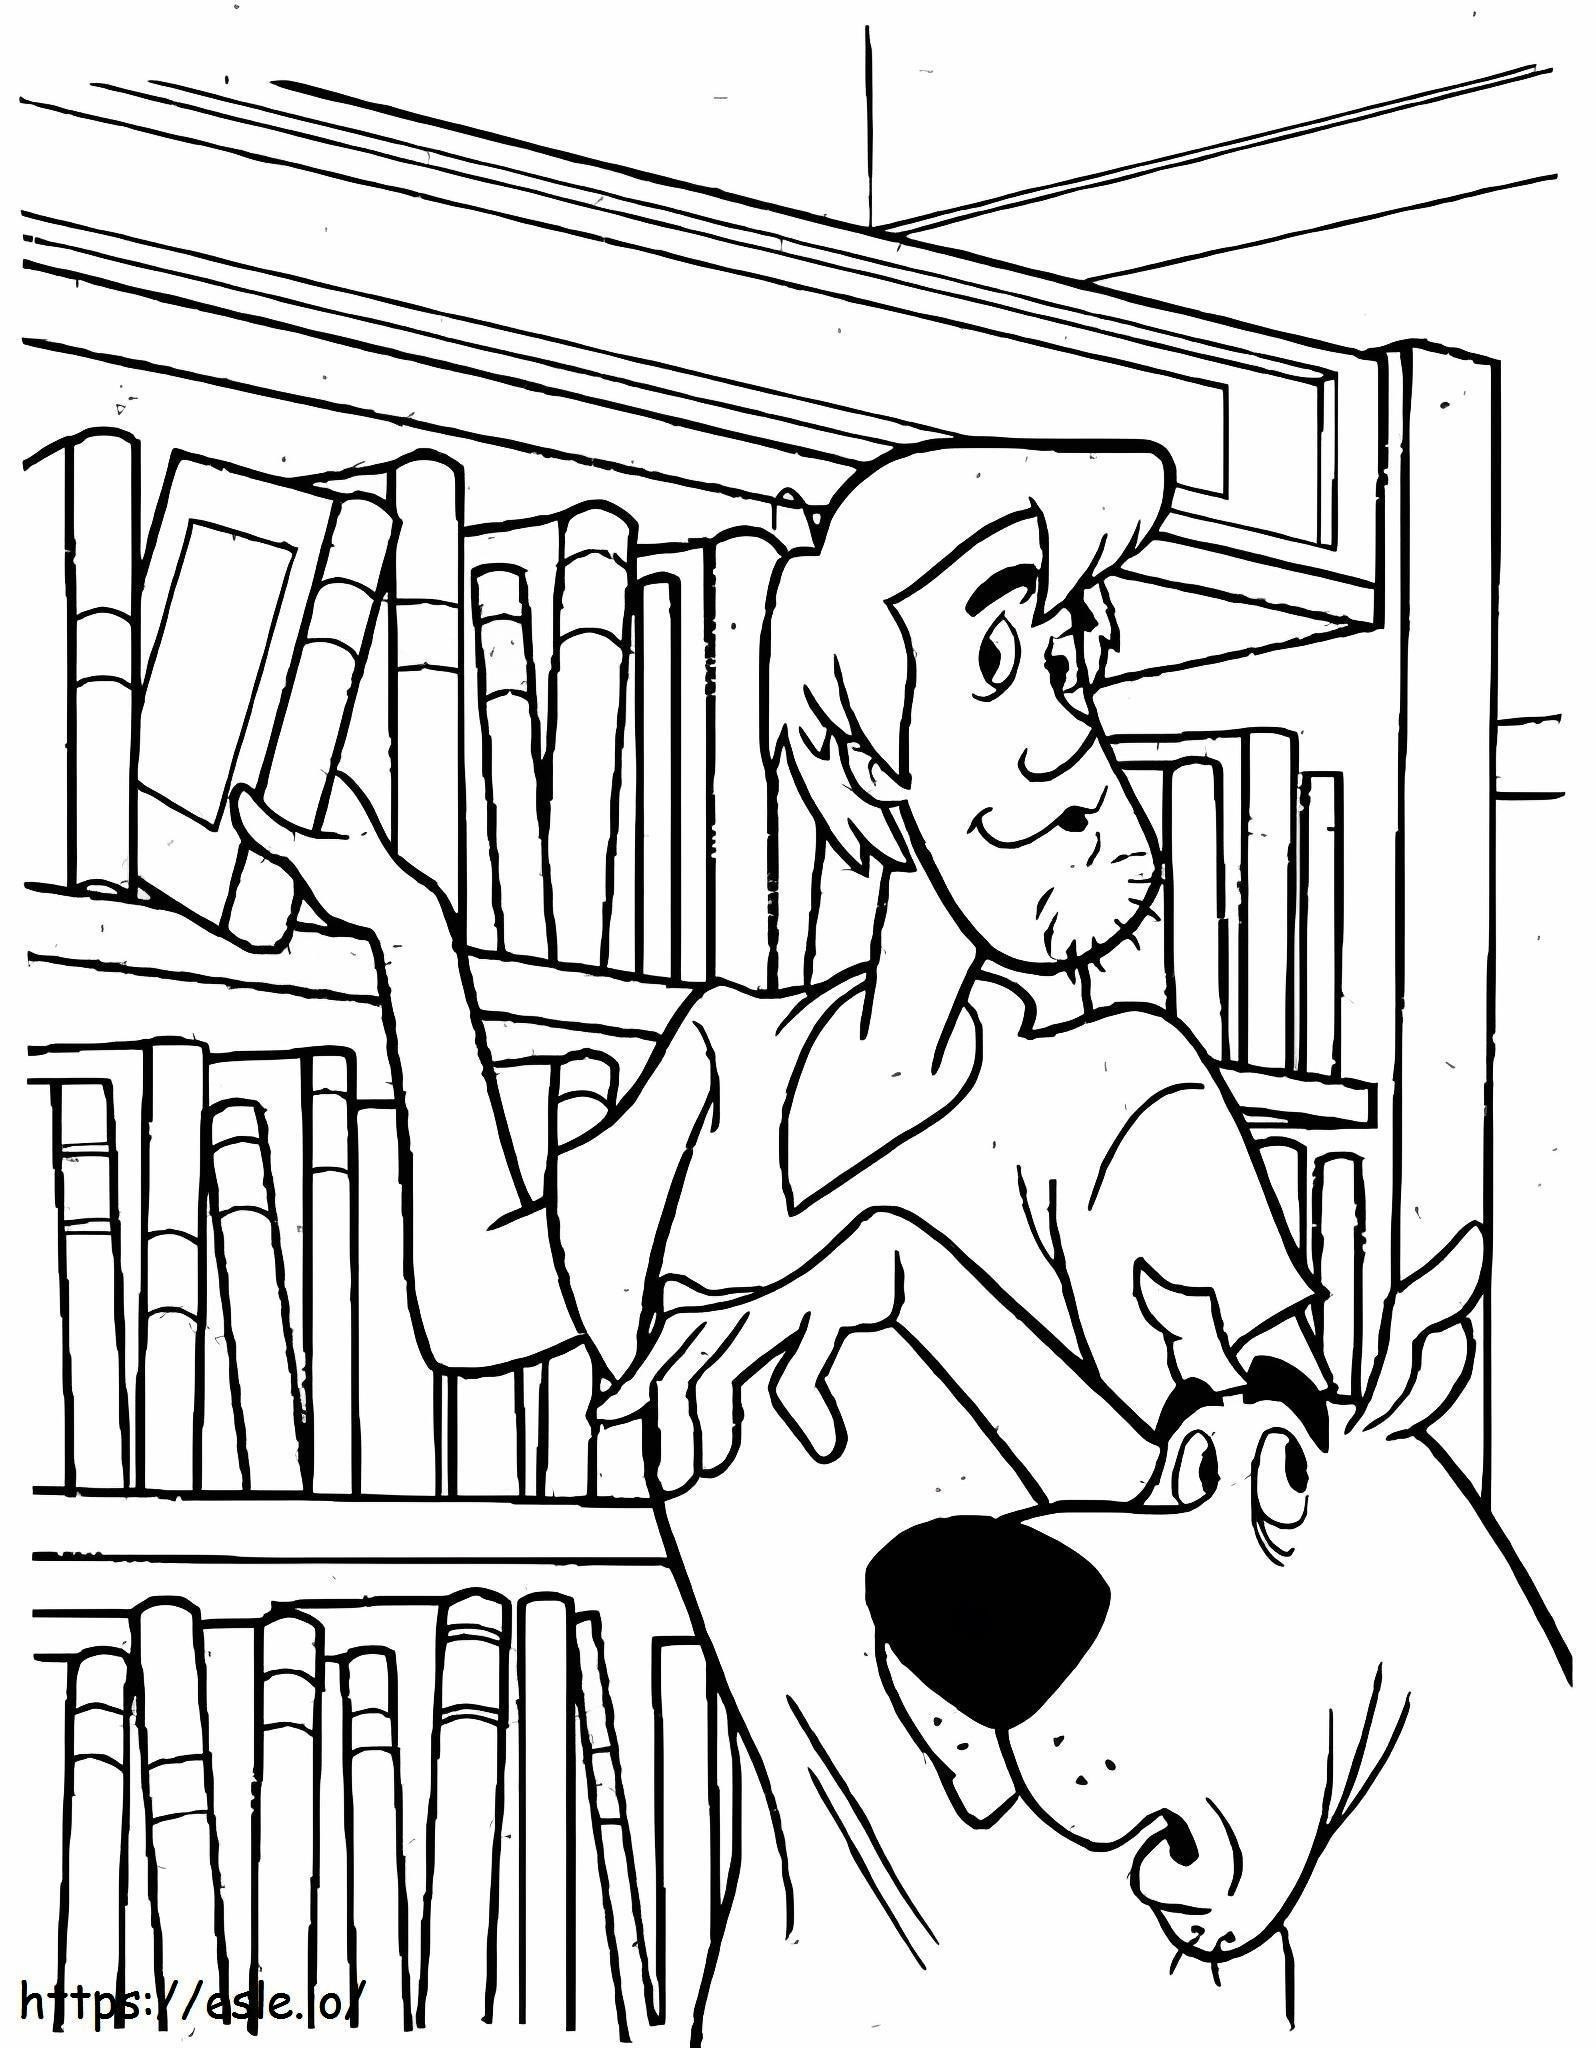 Shaggy és Scooby Doo A Könyvesboltban kifestő